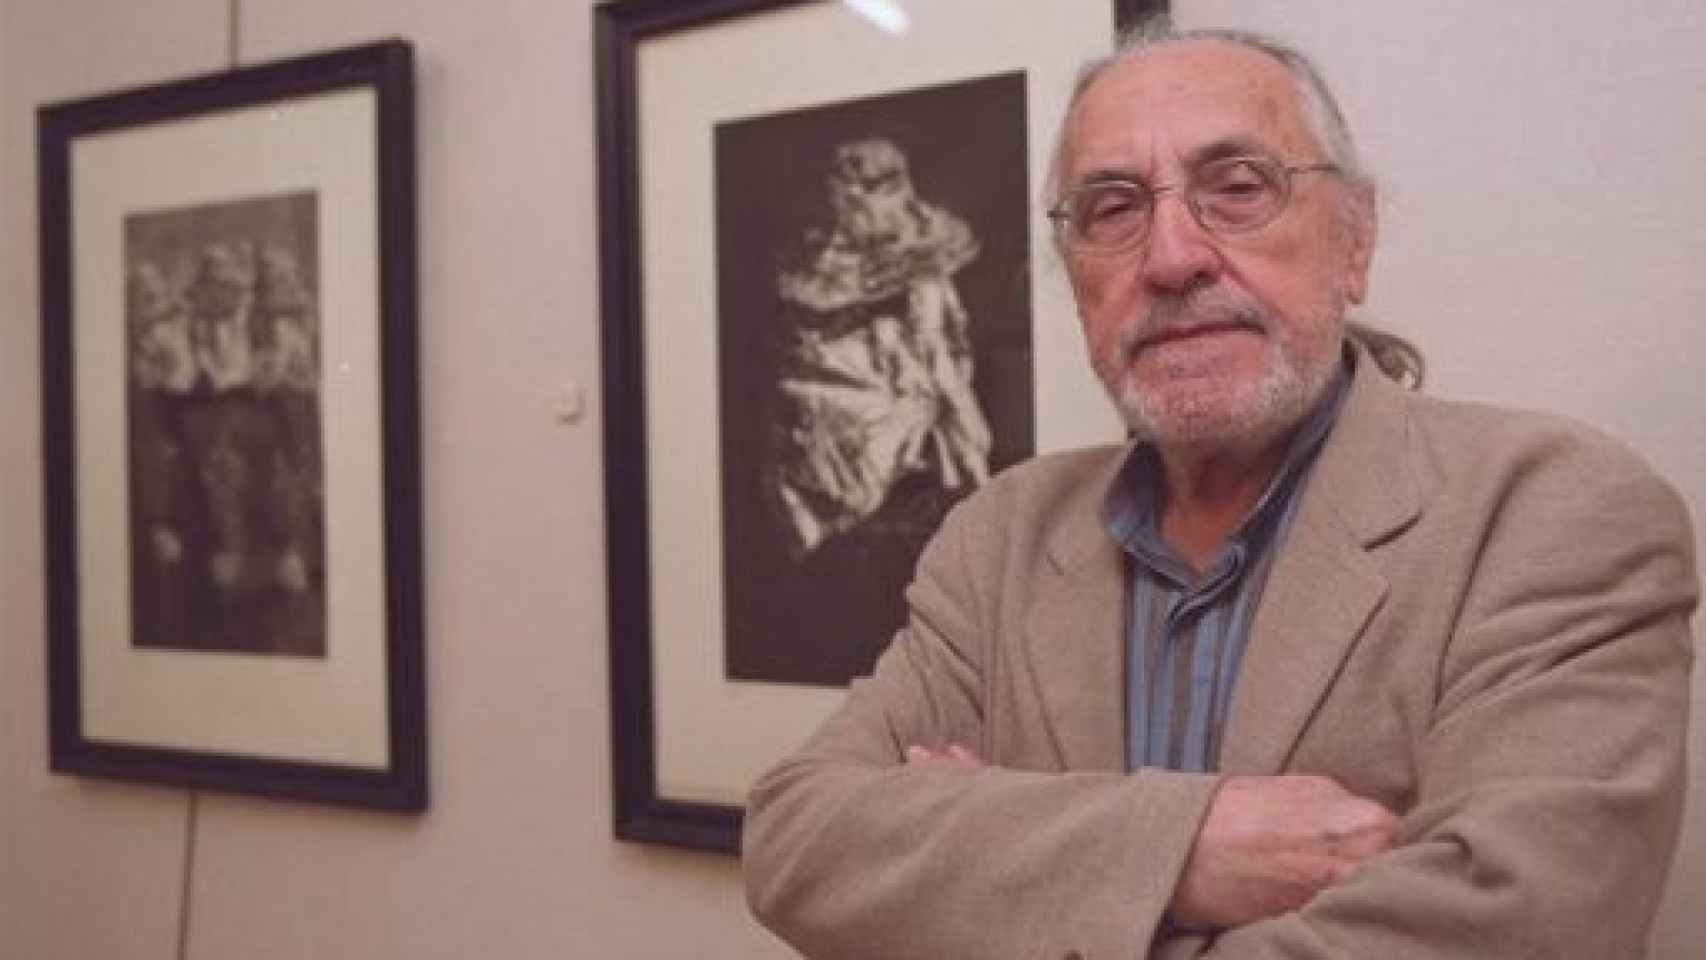 Image: José Duarte, renovador del arte en los 60